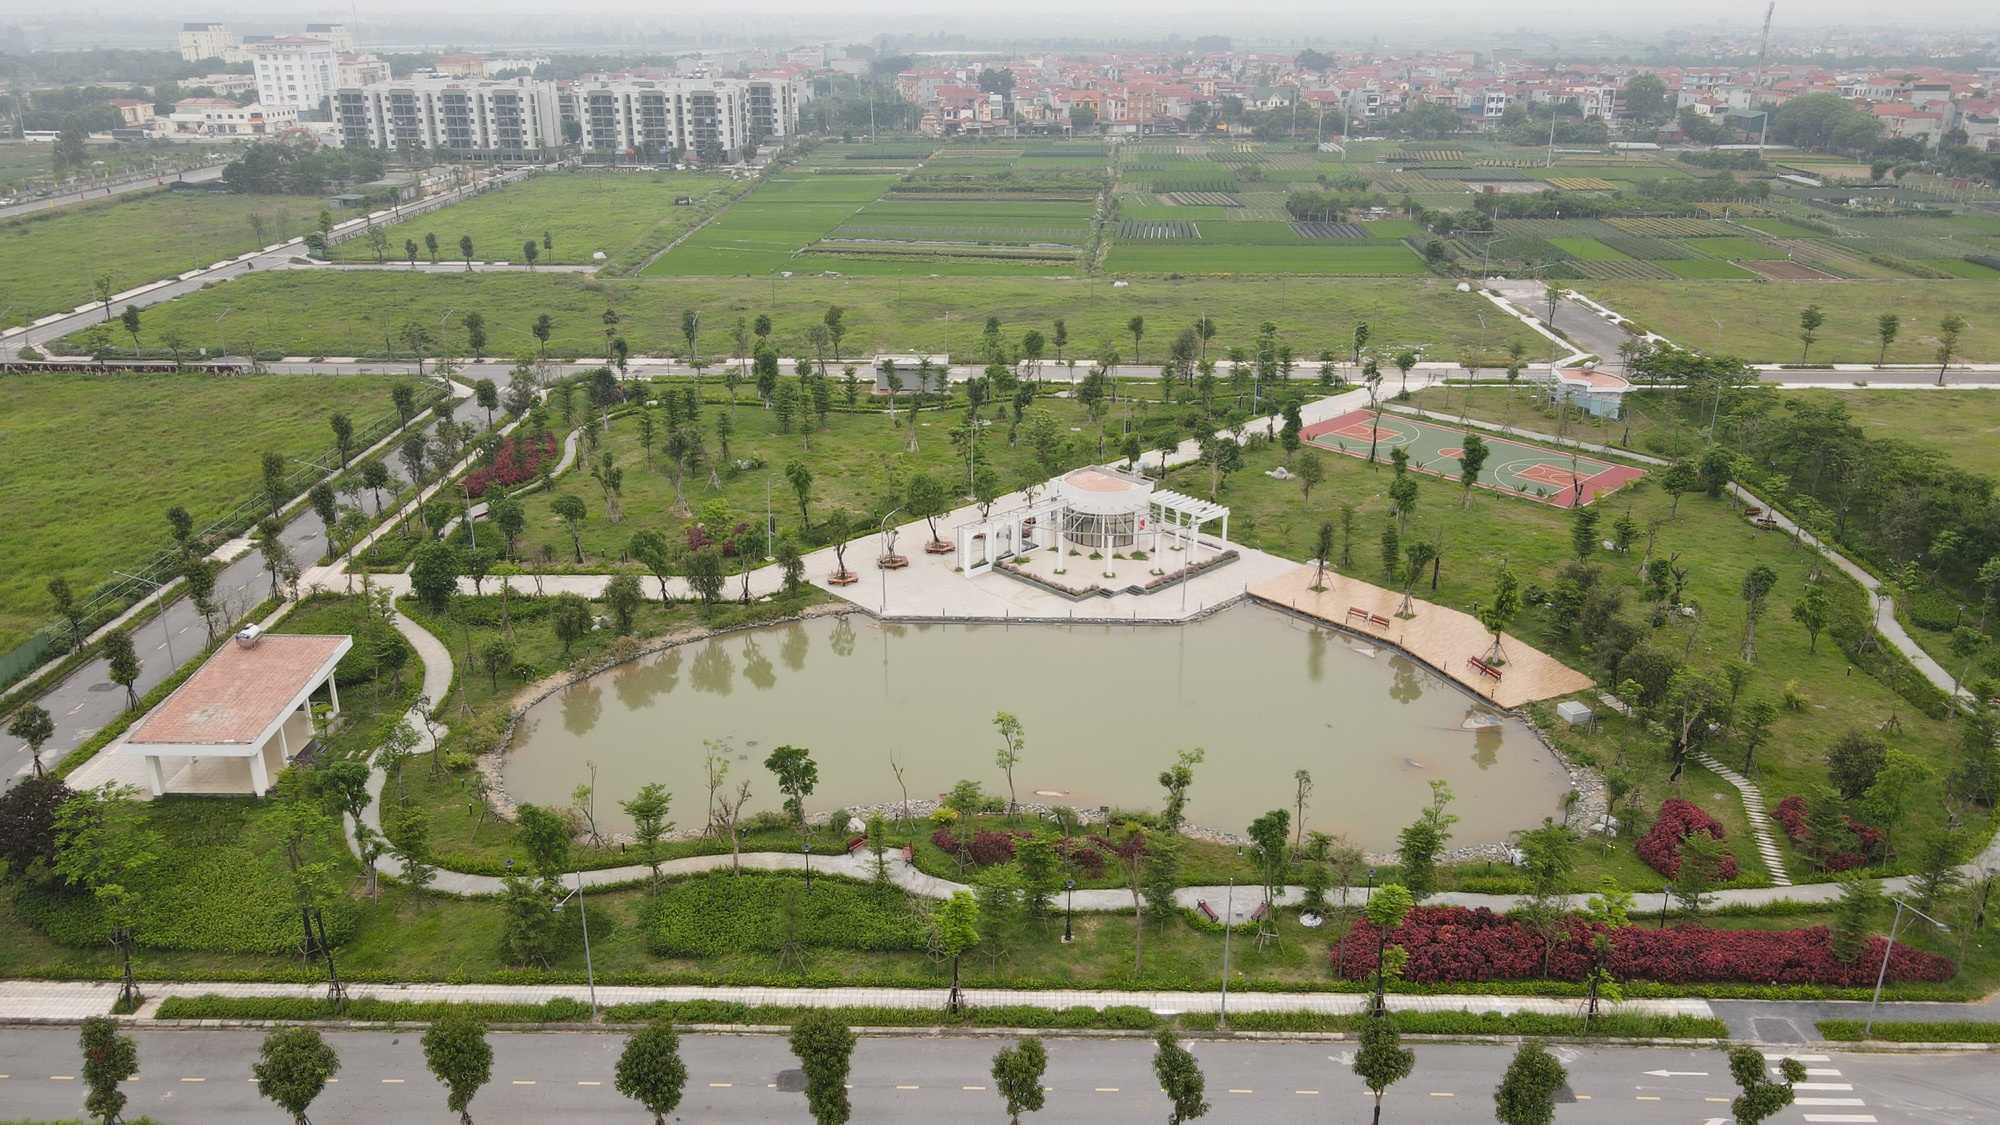 Khởi công xây dựng Tổ hợp dự án nhà ở tại huyện Mê Linh - Ảnh 9.